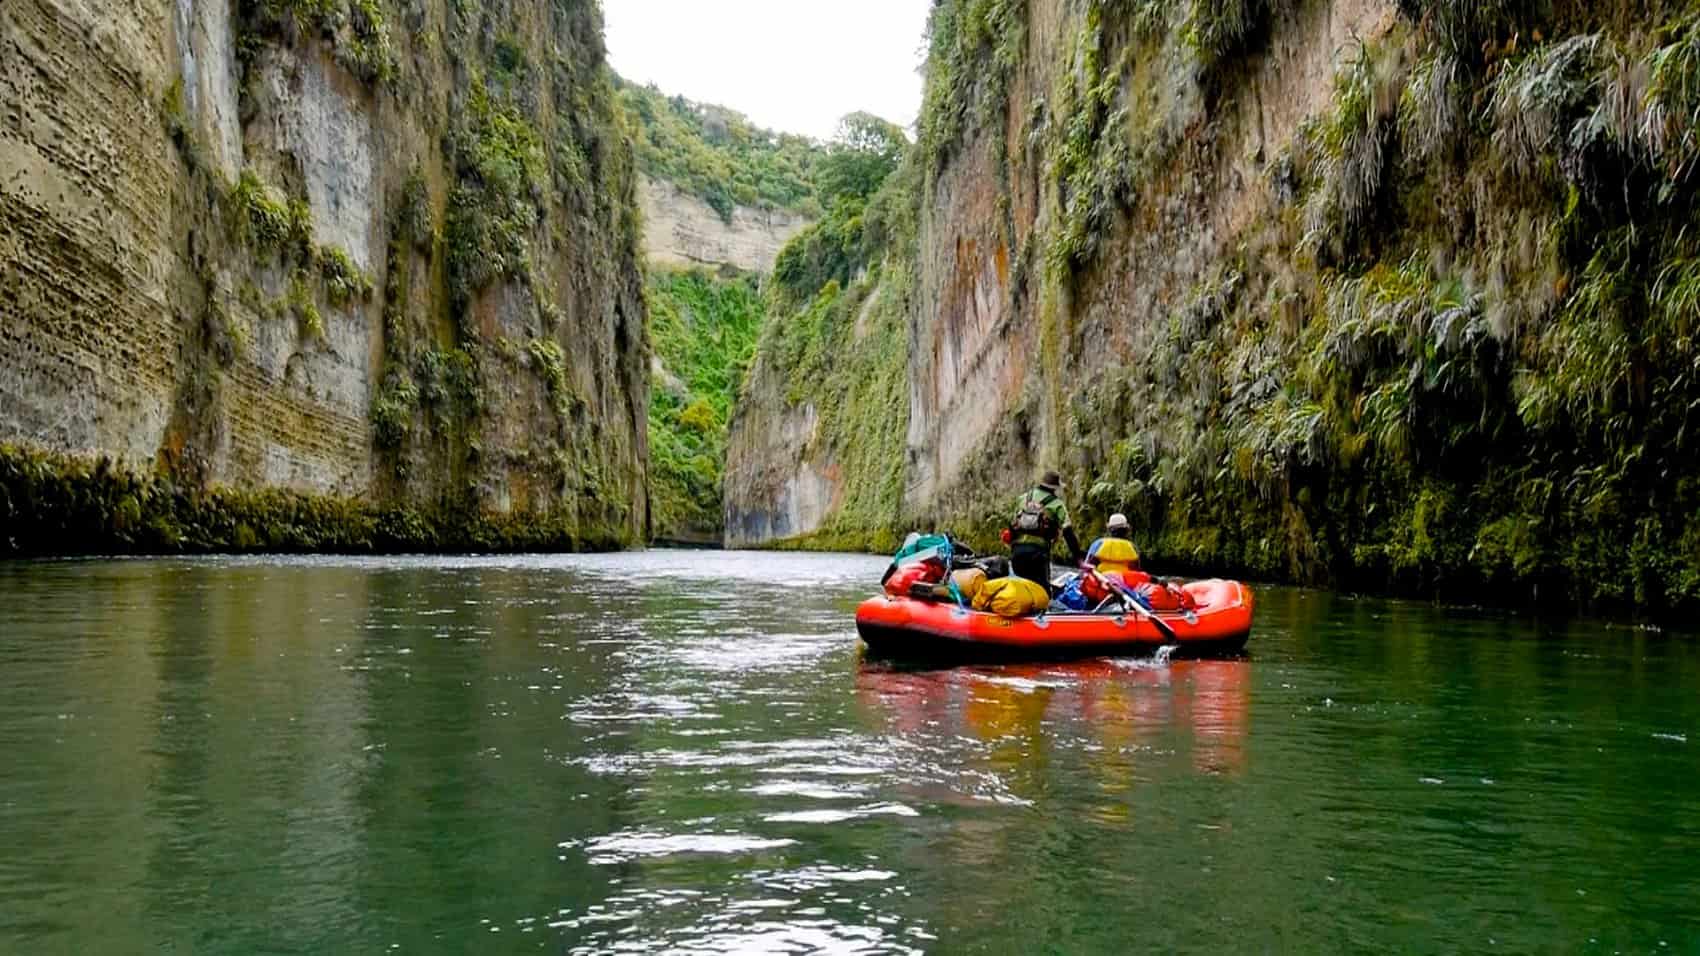 Mokai Canyon - 3 day river rafting holiday Rangitikei River Canyons